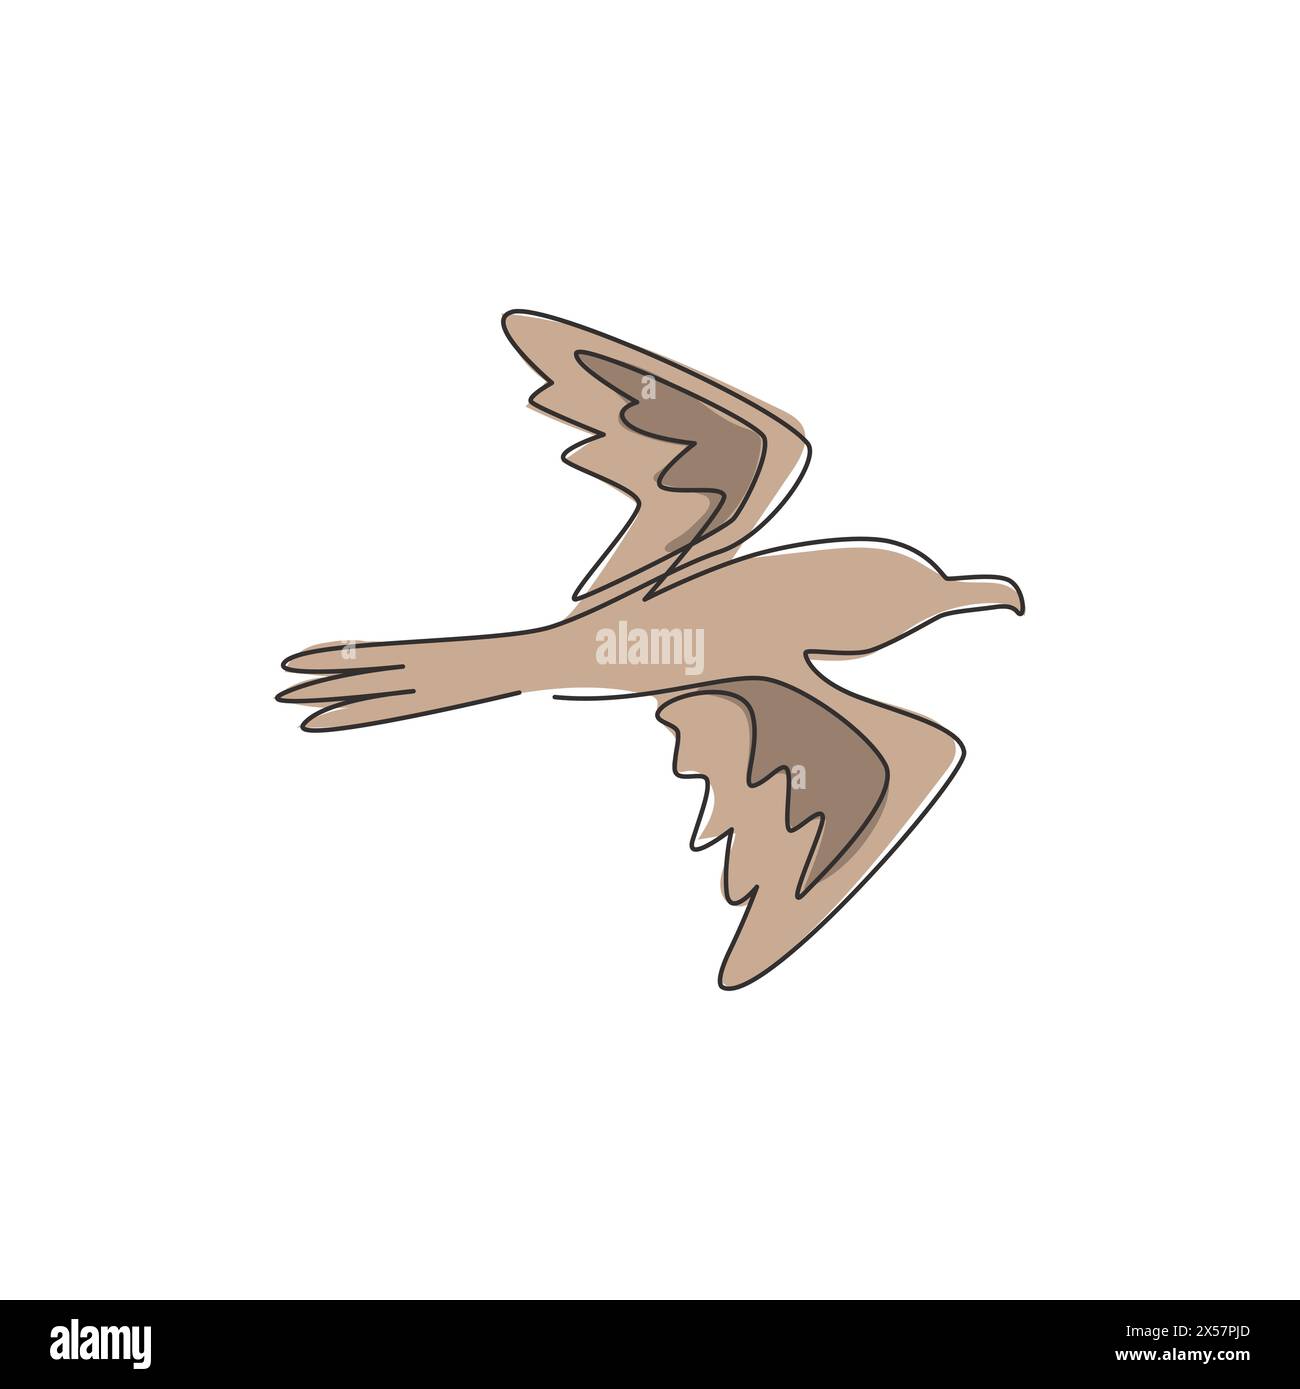 Dessin de ligne continue simple d'albatros mignon pour l'identité de logo d'entreprise. Concept adorable de mascotte d'oiseau de mer pour l'icône de marque de compagnie maritime. Moderne Illustration de Vecteur